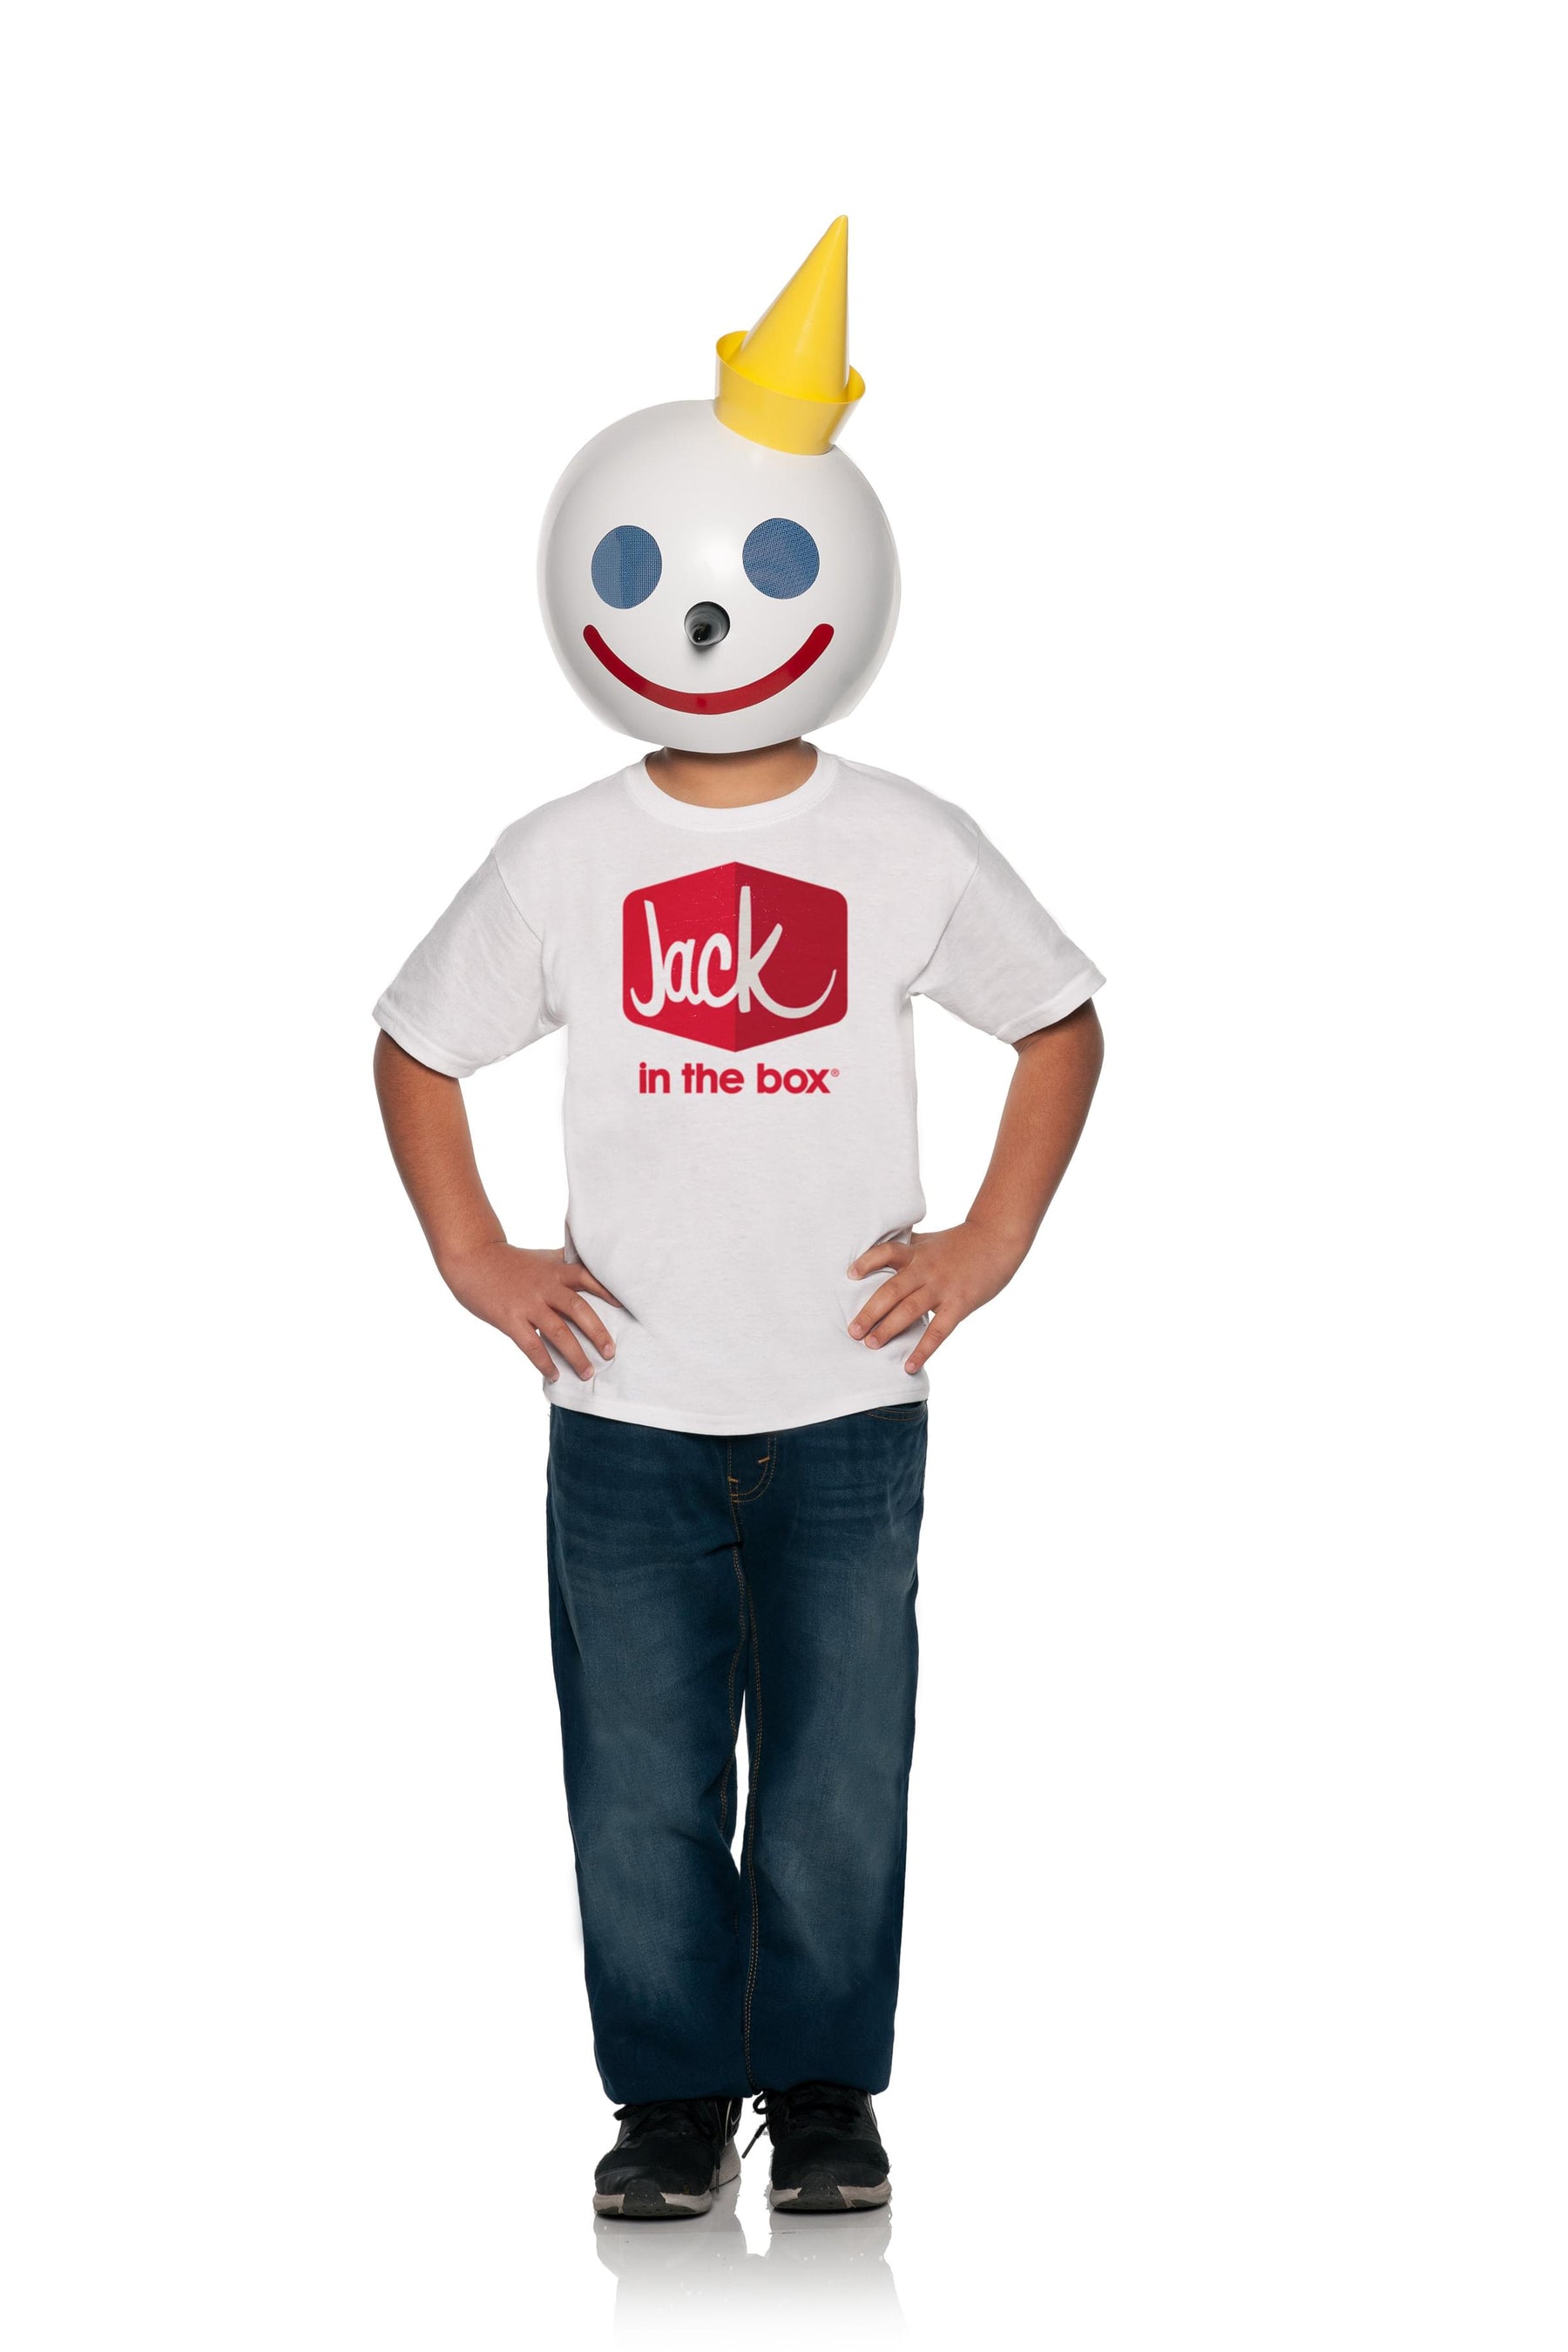 Jack In The Box Kids' Costume Kit